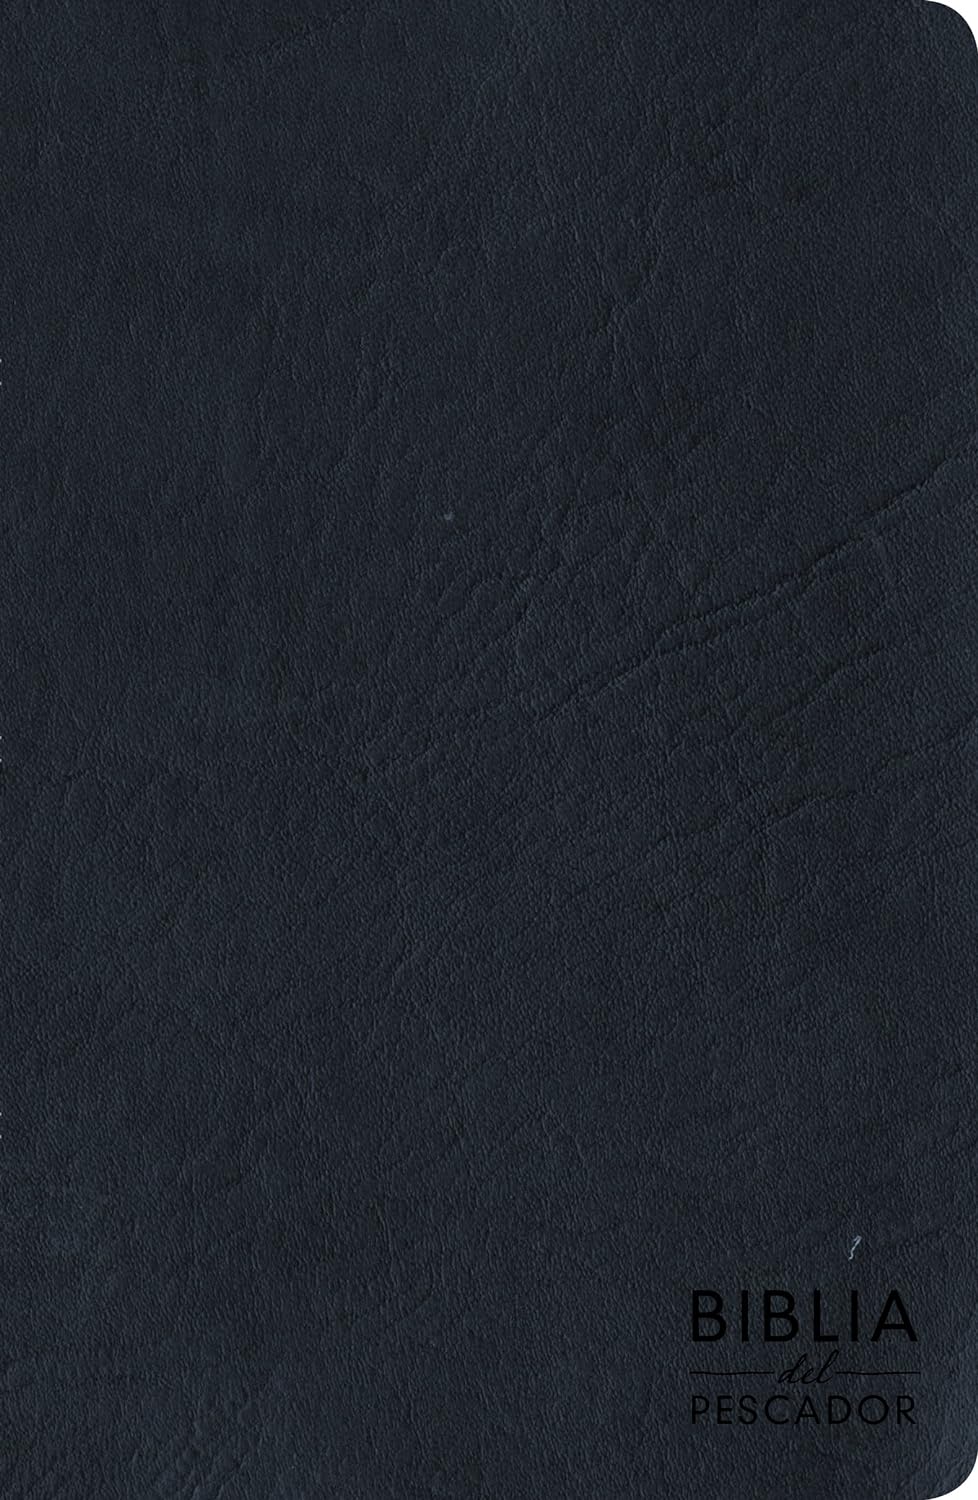 Biblia del Pescador RVR 1960, letra grande, azul símil piel